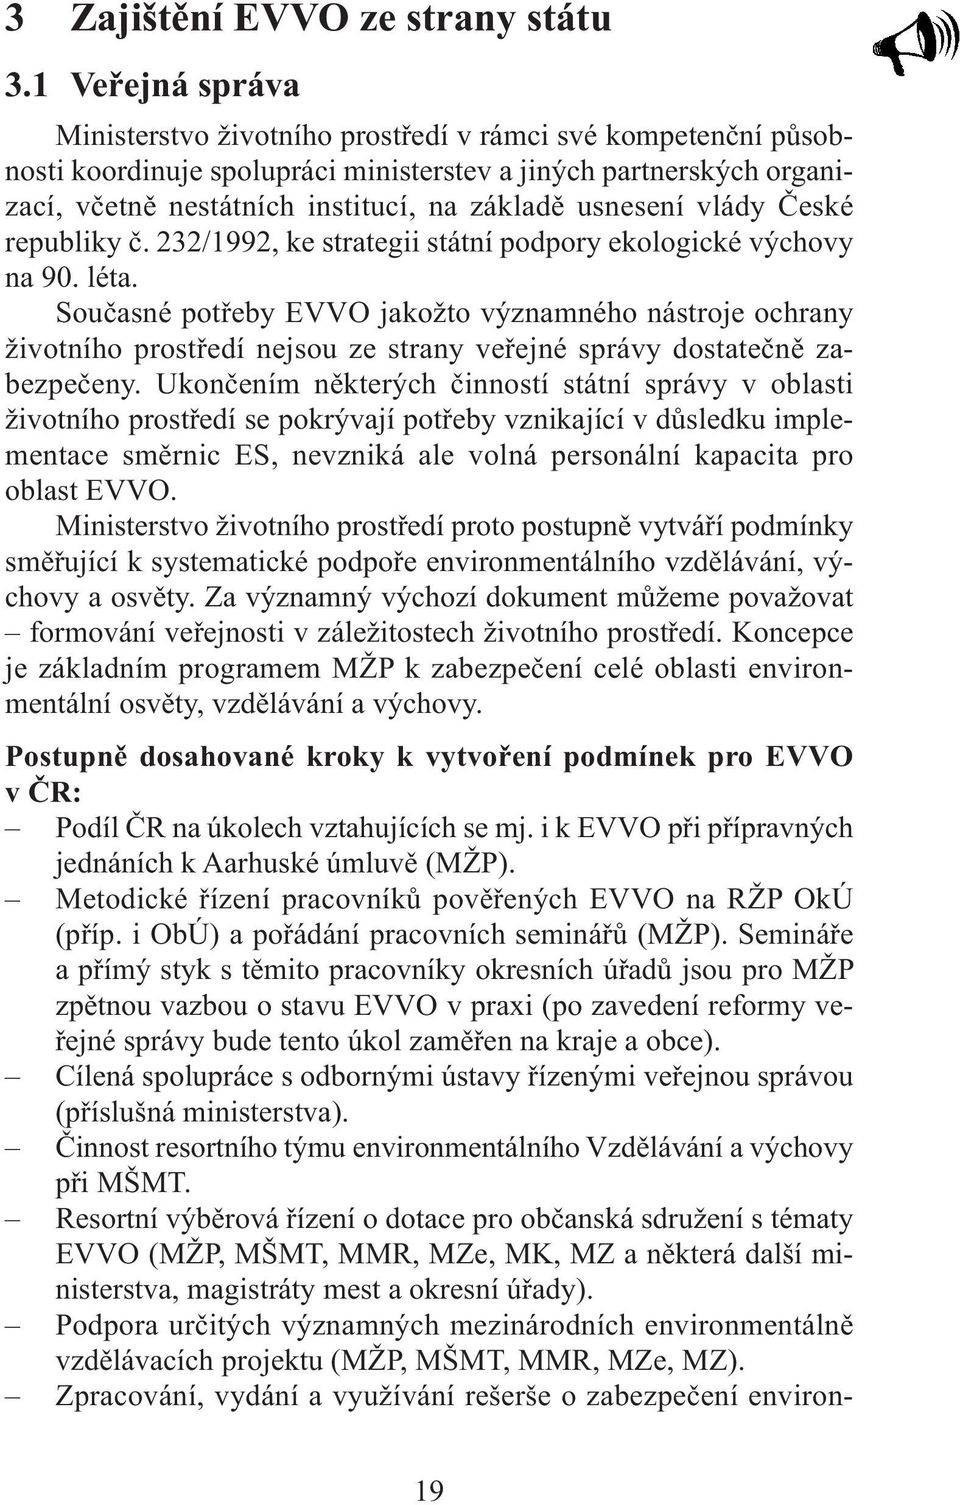 usnesení vlády České republiky č. 232/1992, ke strategii státní podpory ekologické výchovy na 90. léta.